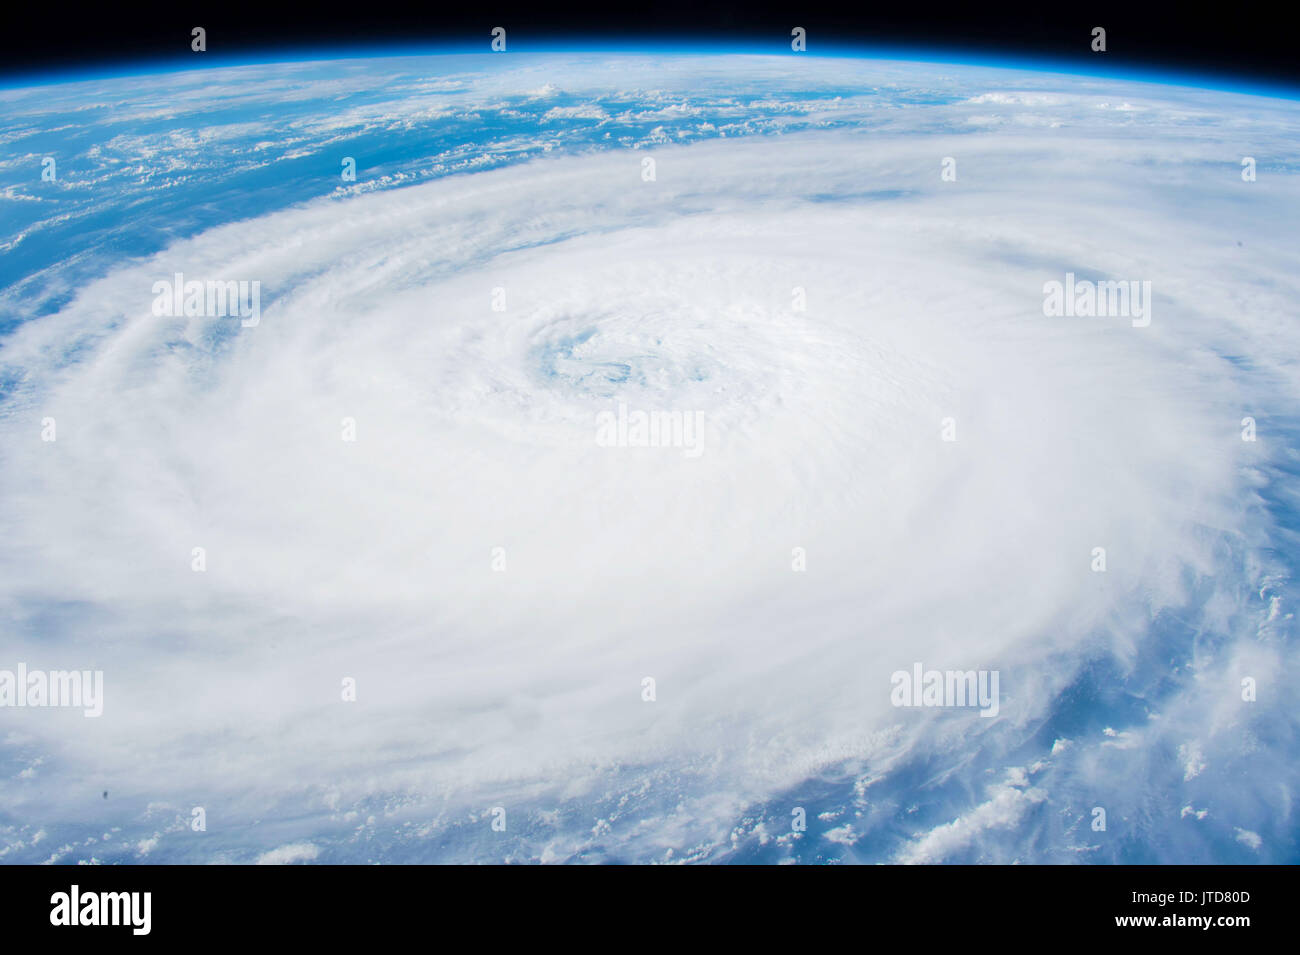 Hurrikan, Taifun, Luftaufnahme aus einem Raumschiff Raumschiff auf Platz. Elemente dieses Bild von der NASA eingerichtet Stockfoto